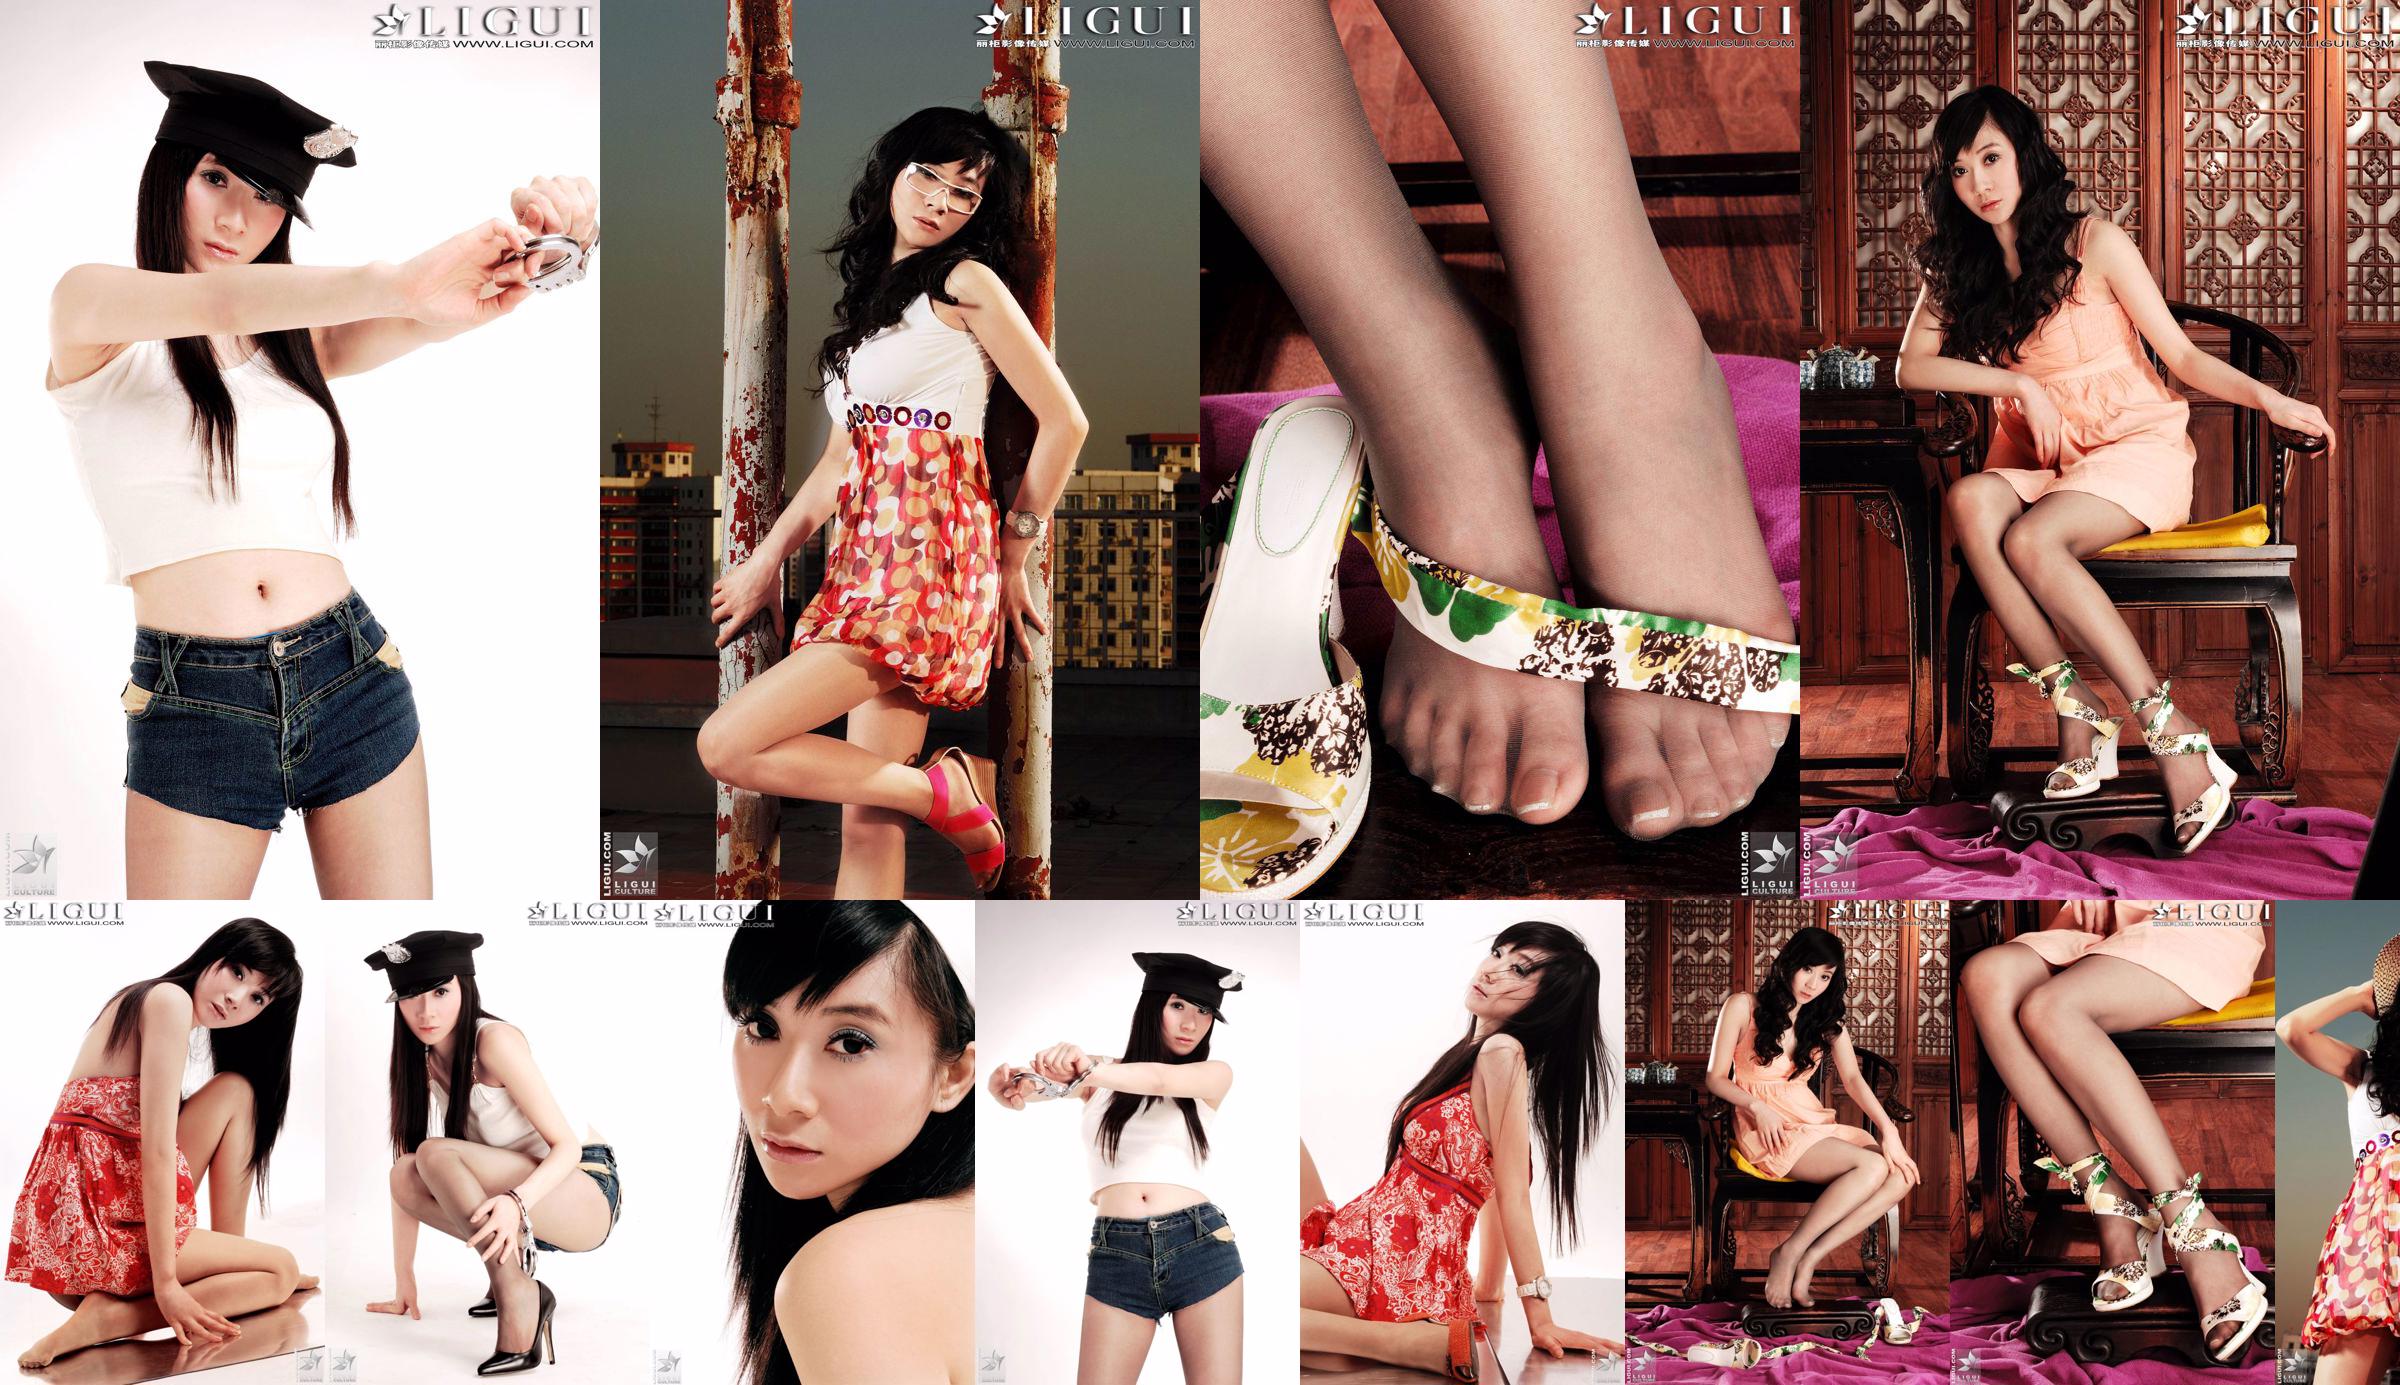 [丽 柜 LiGui] Gambar Foto Model Jinxin Silky Foot dan Beautiful Legs No.004ce3 Halaman 1